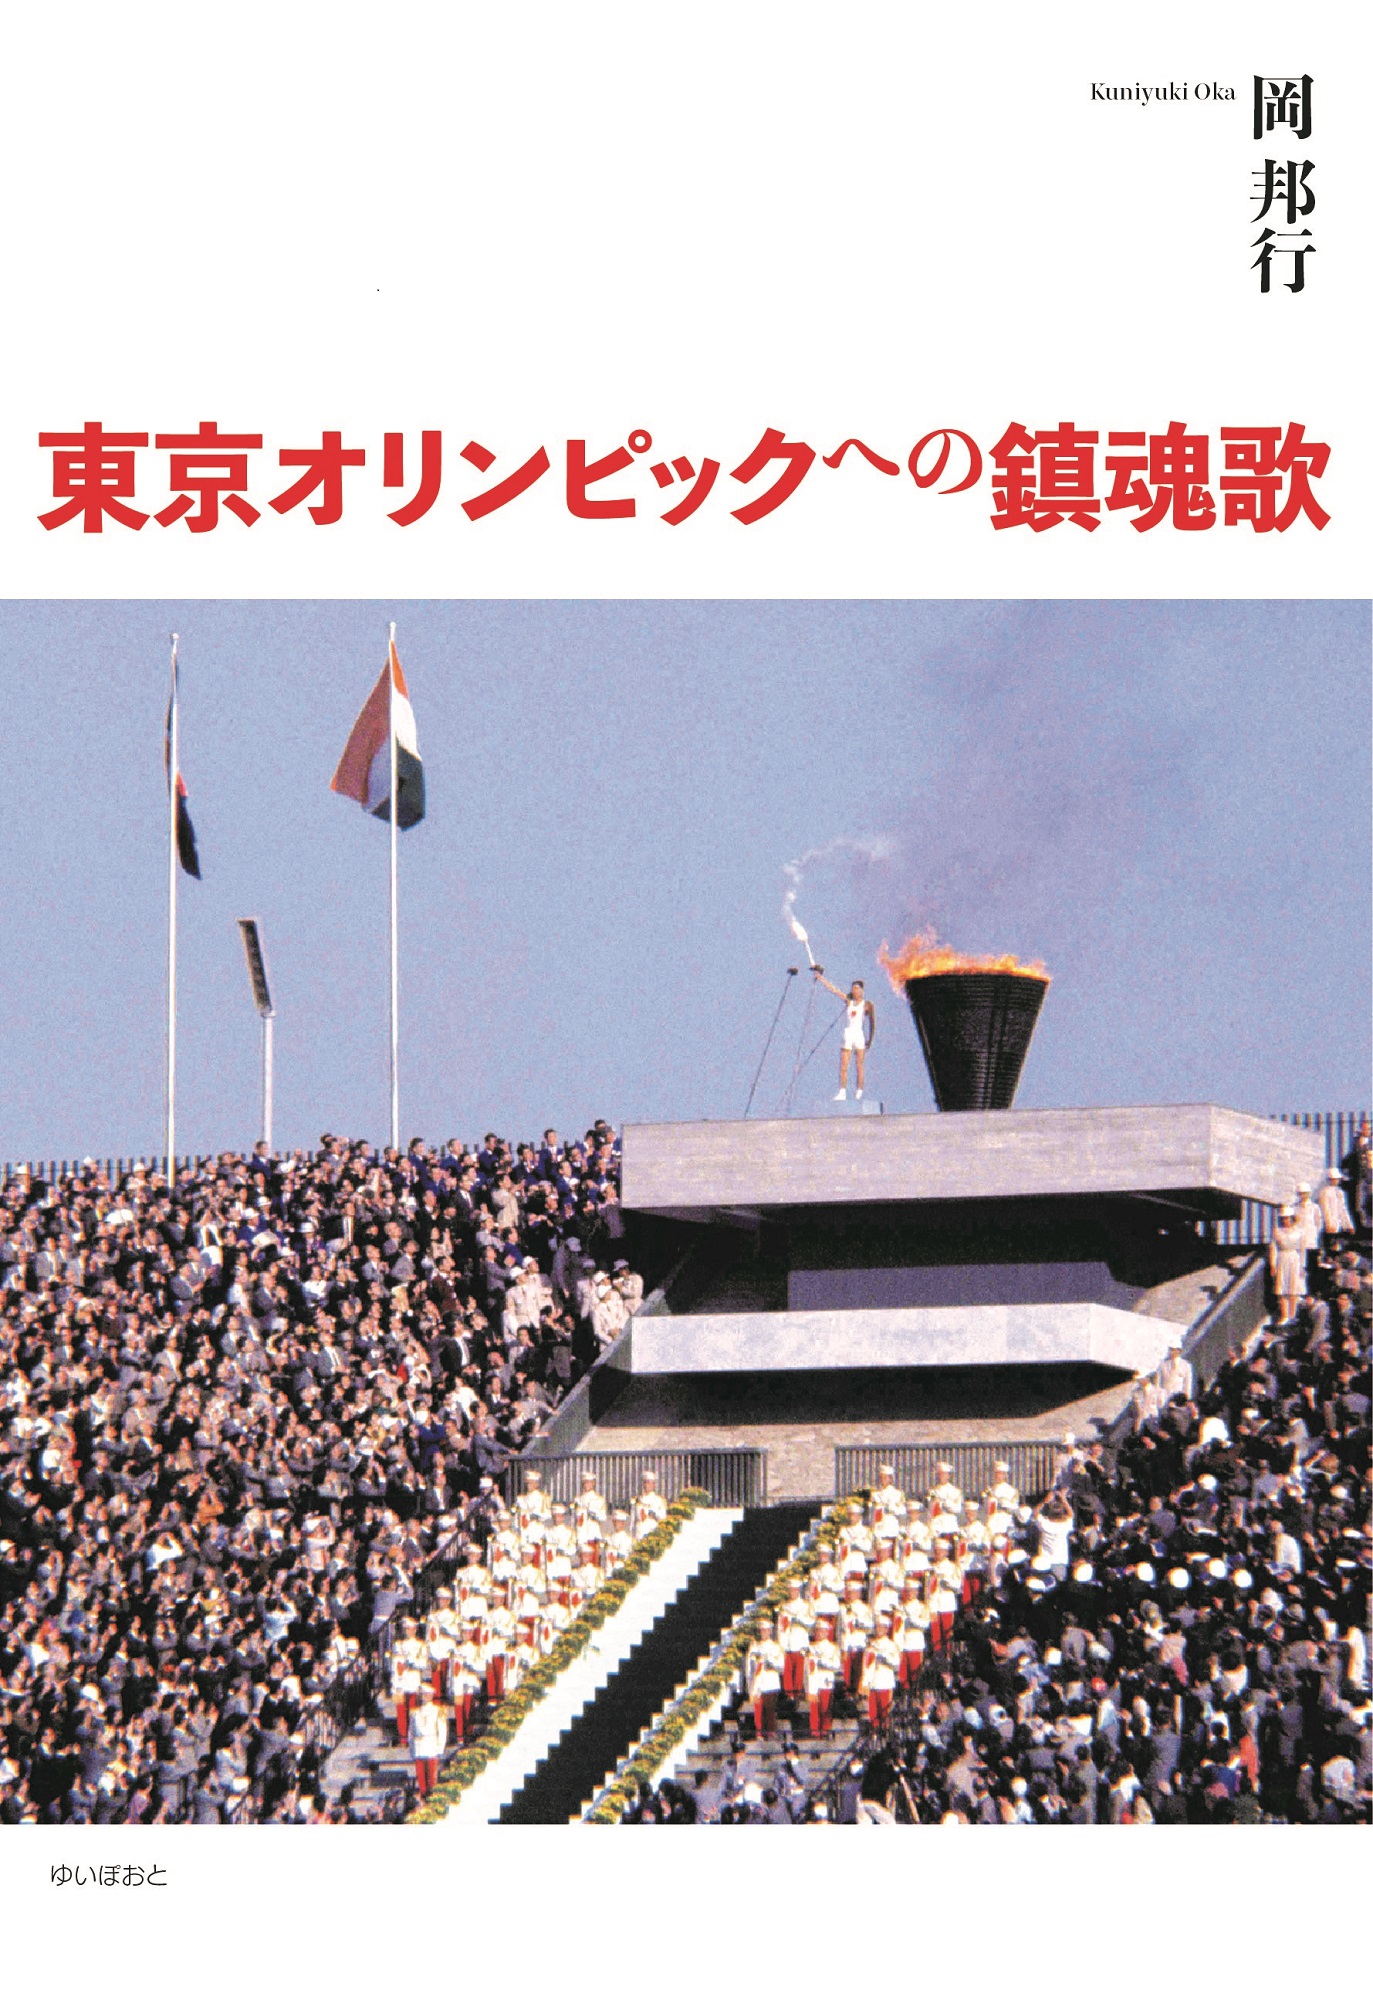 東京オリンピックへの鎮魂歌の商品画像